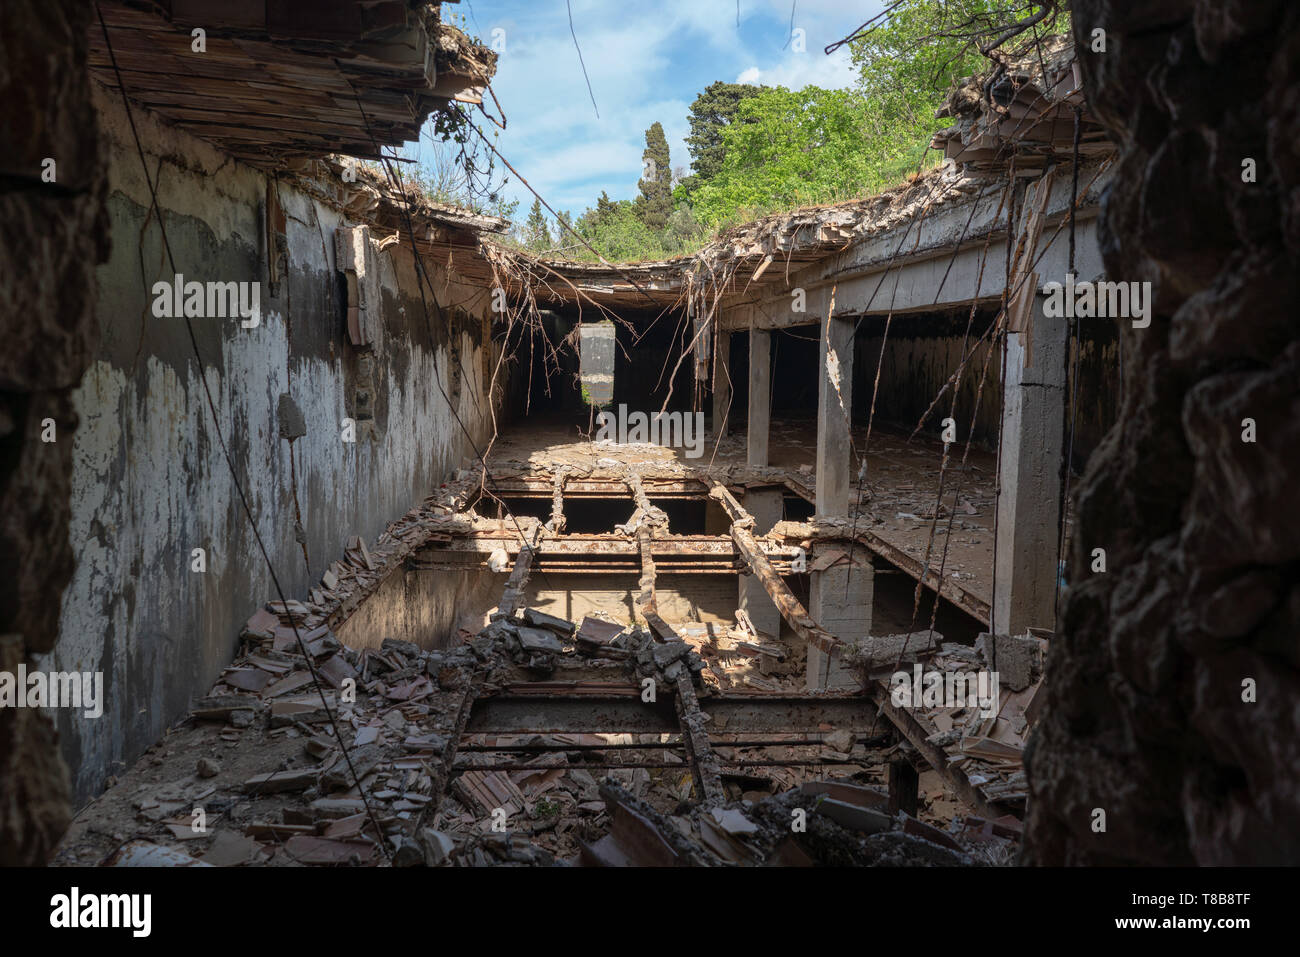 Ville abbandonate nel nord ovest di Anacapri, lusso ex respinto le rovine di villa - interni, all'interno Foto Stock